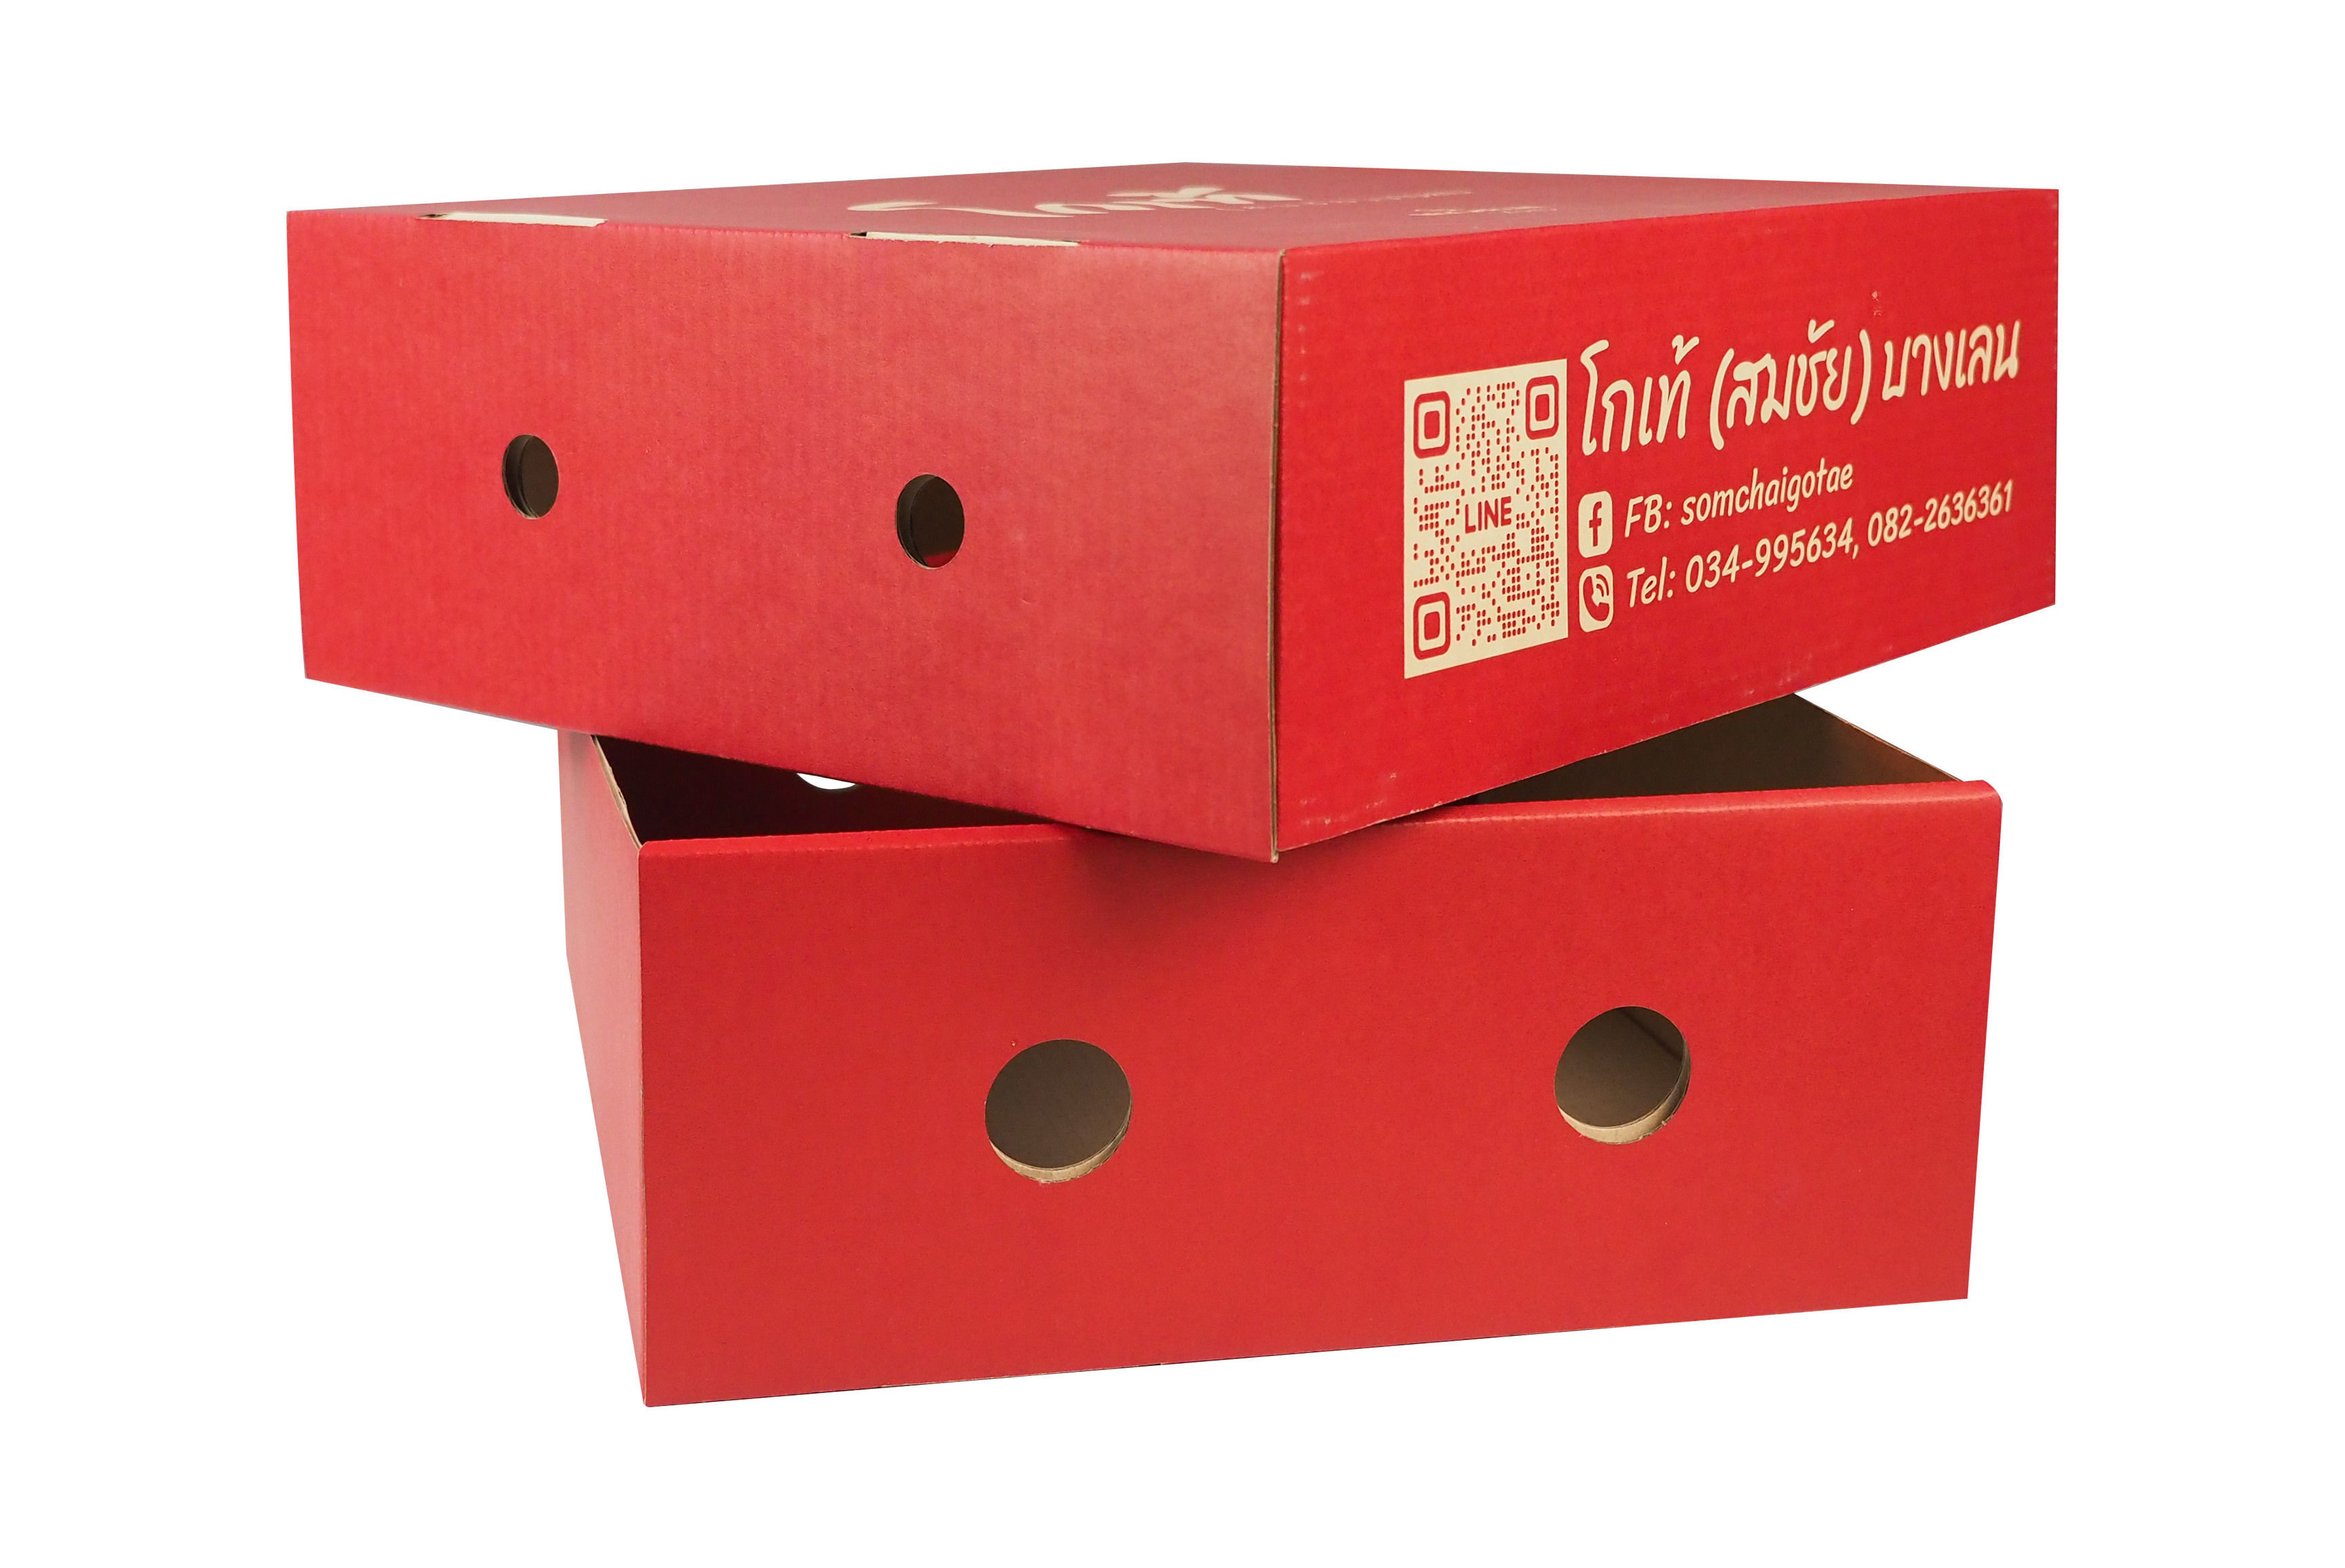 มีการไดคัทที่ตัวกล่อง และตัวฝาครอบ เมื่อปิดกล่องแล้ว รูกล่อง 2 ส่วนนี้ จะตรงกันพอดี การเจาะรูนั้นเพื่อให้อากาศภายในกล่องถ่ายเทได้สะดวก 